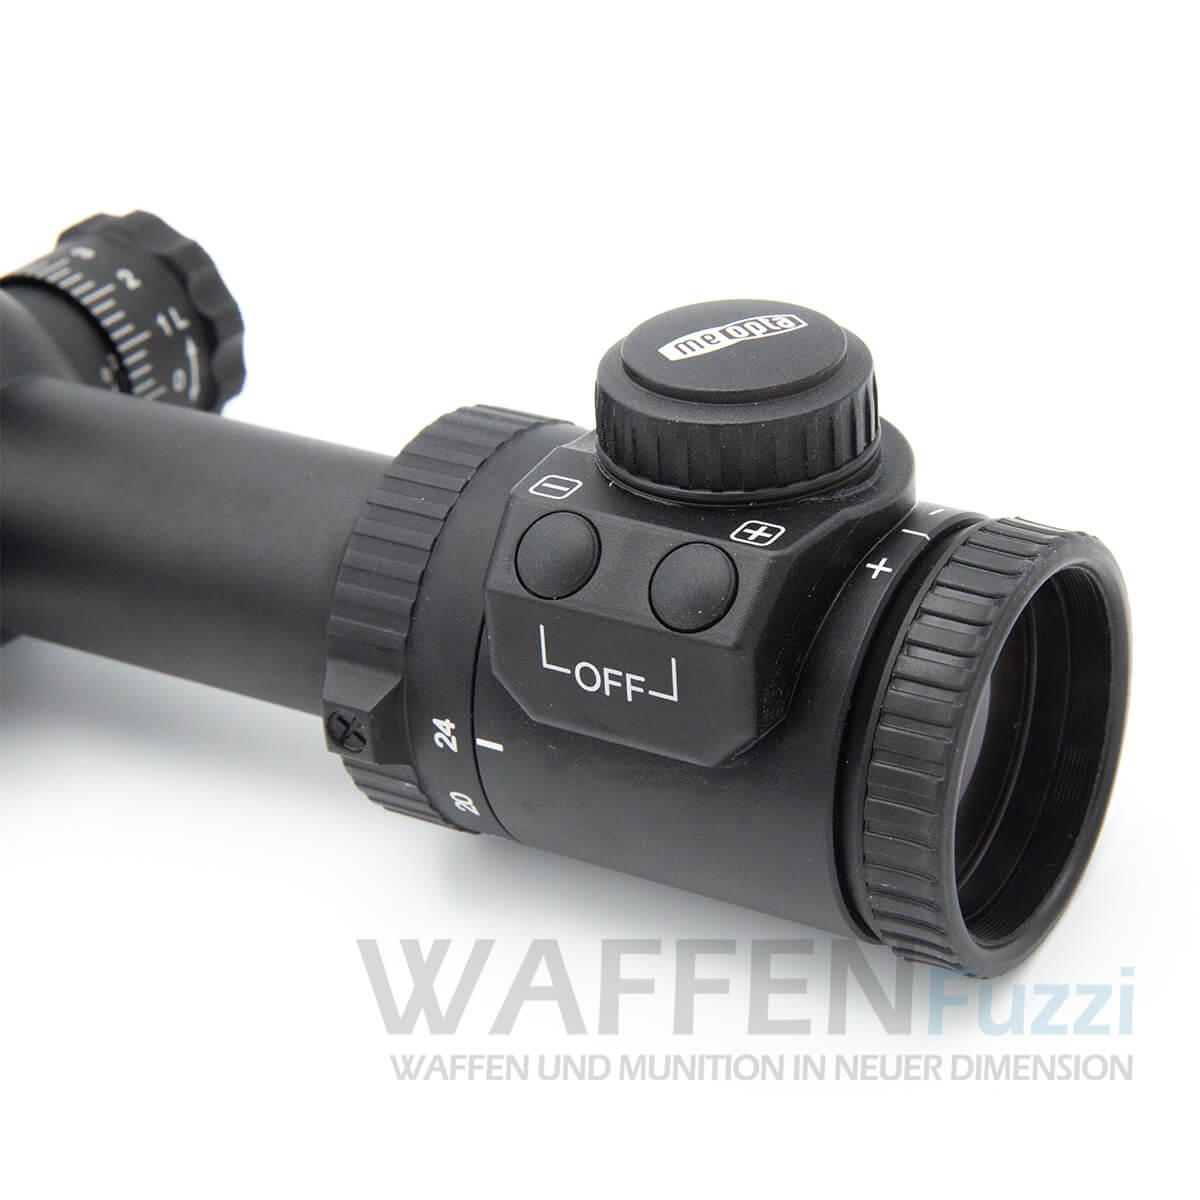 Meopta ZD 6-24x56RD Zielfernrohr für weite Distanzen Zielfernrohr online kaufen Munition und Zubehör 